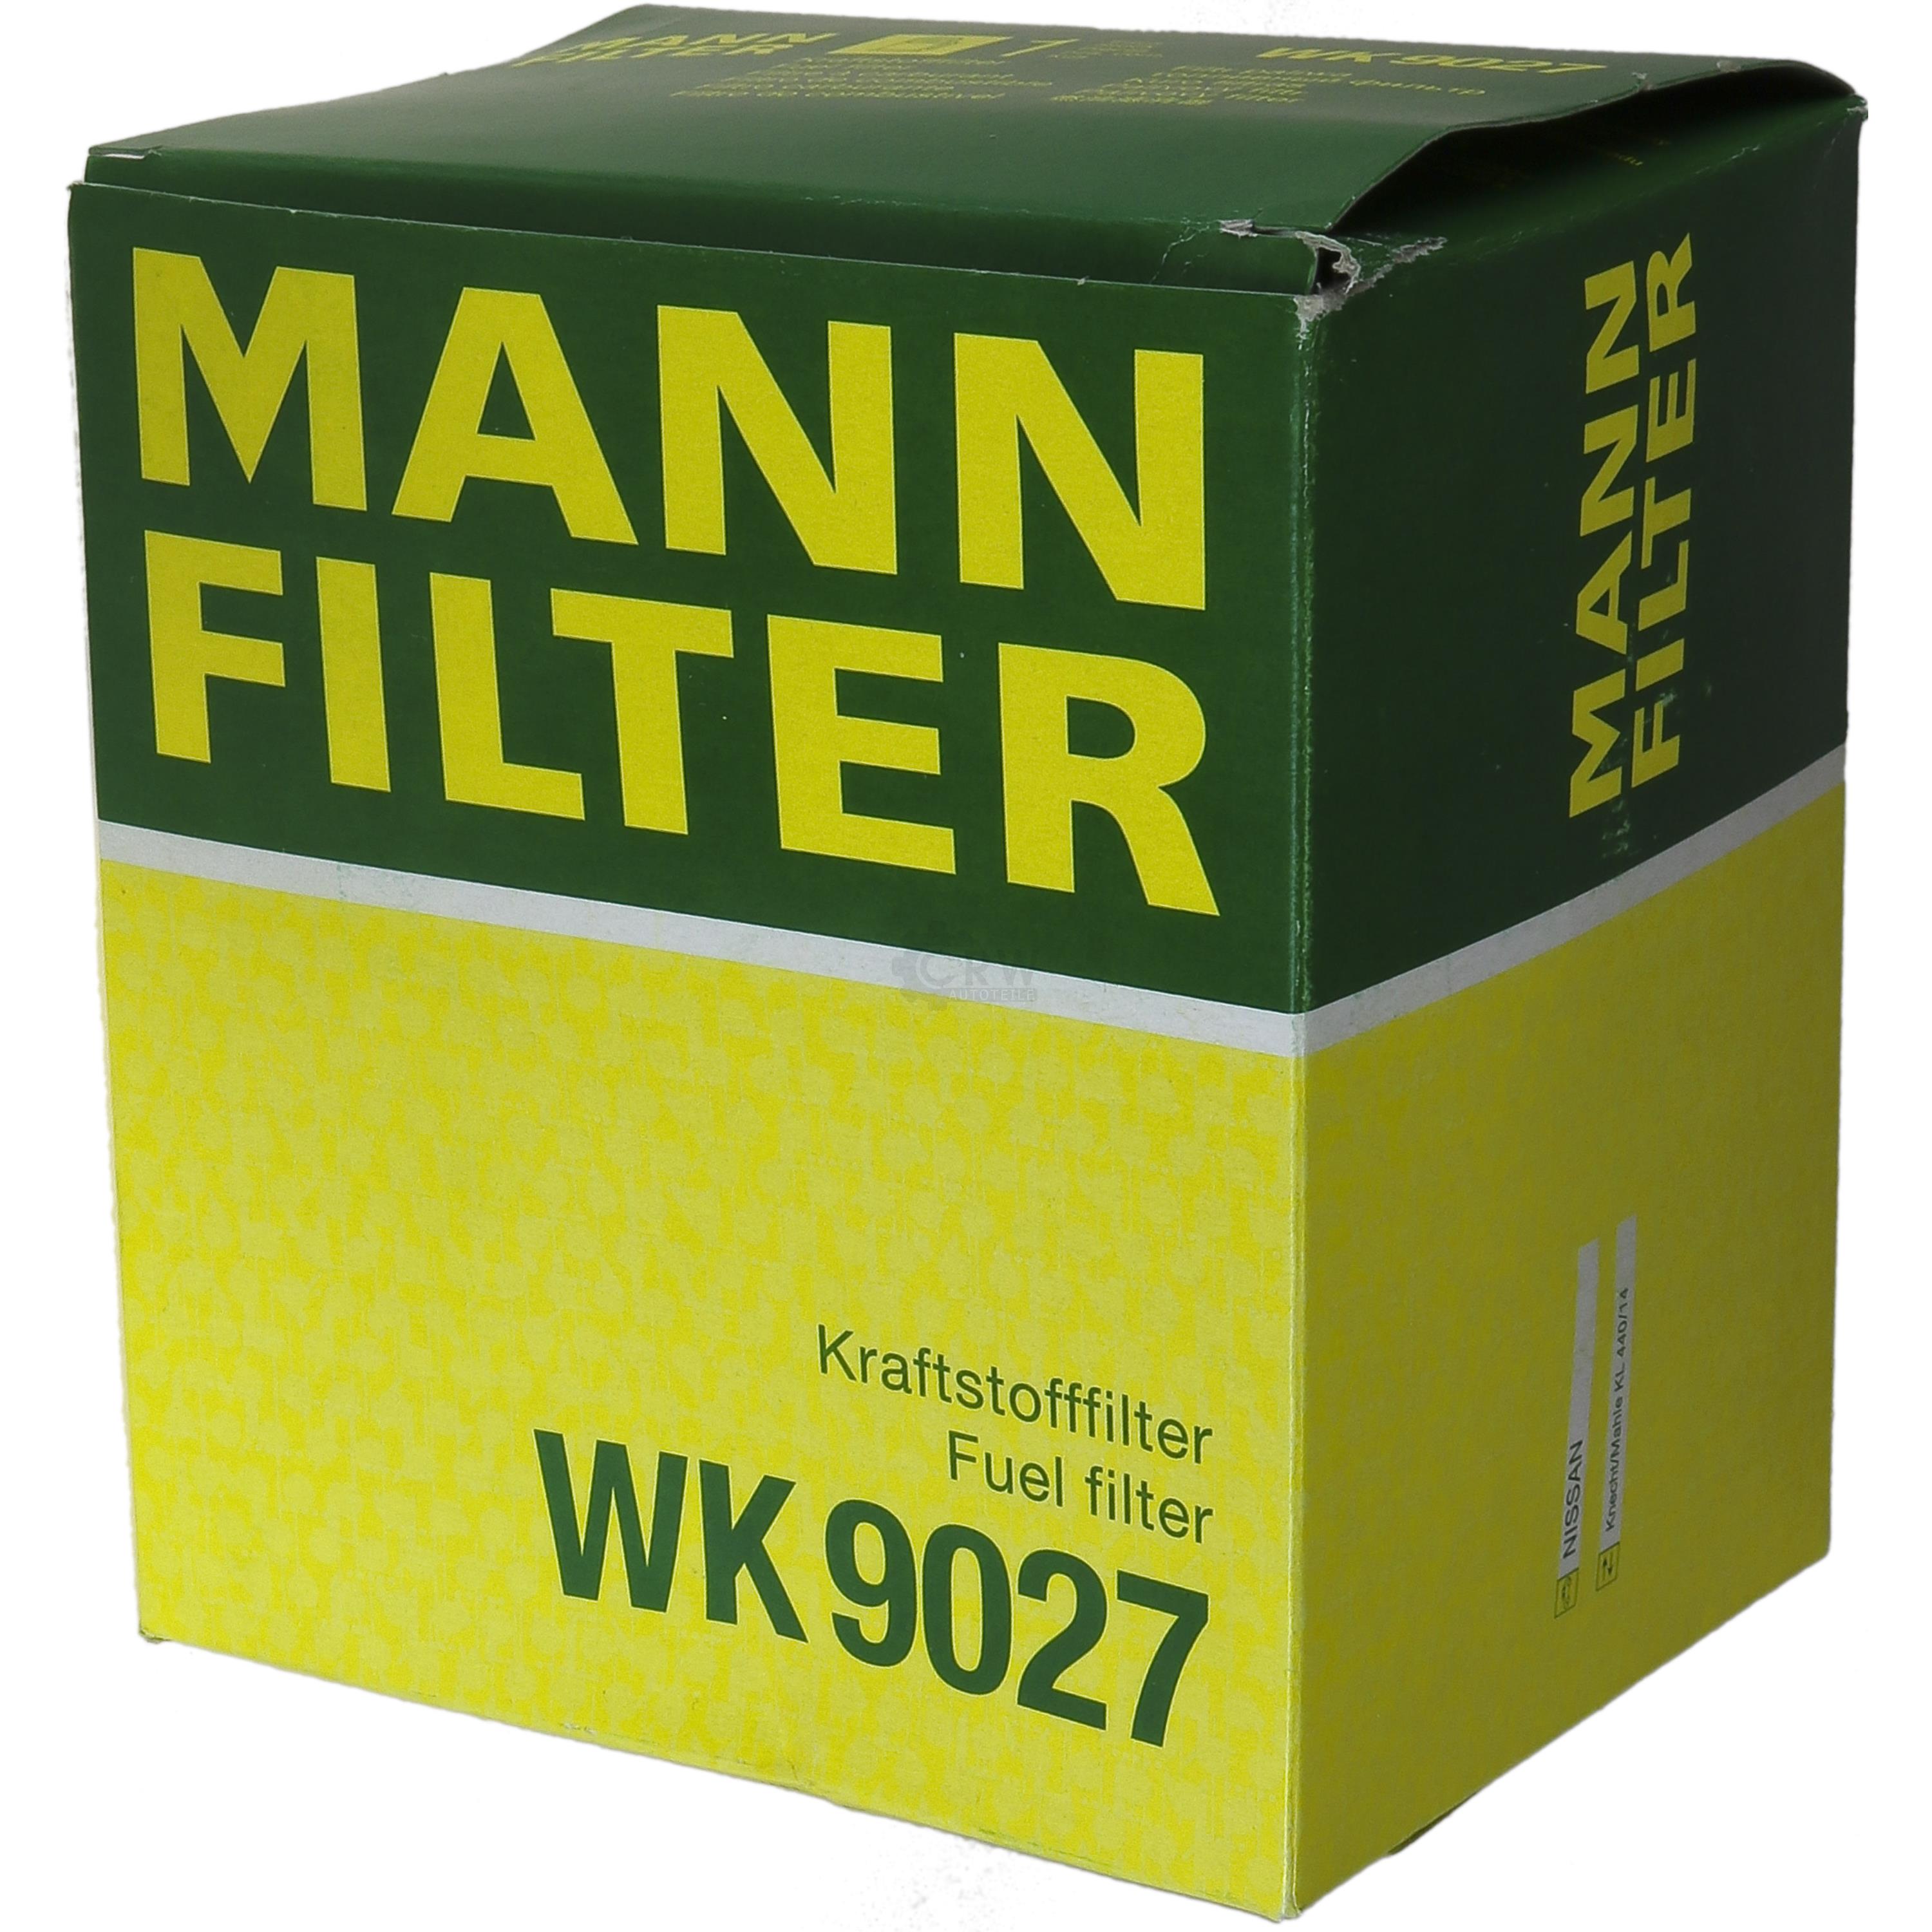 MANN-FILTER Kraftstofffilter WK 9027 Fuel Filter